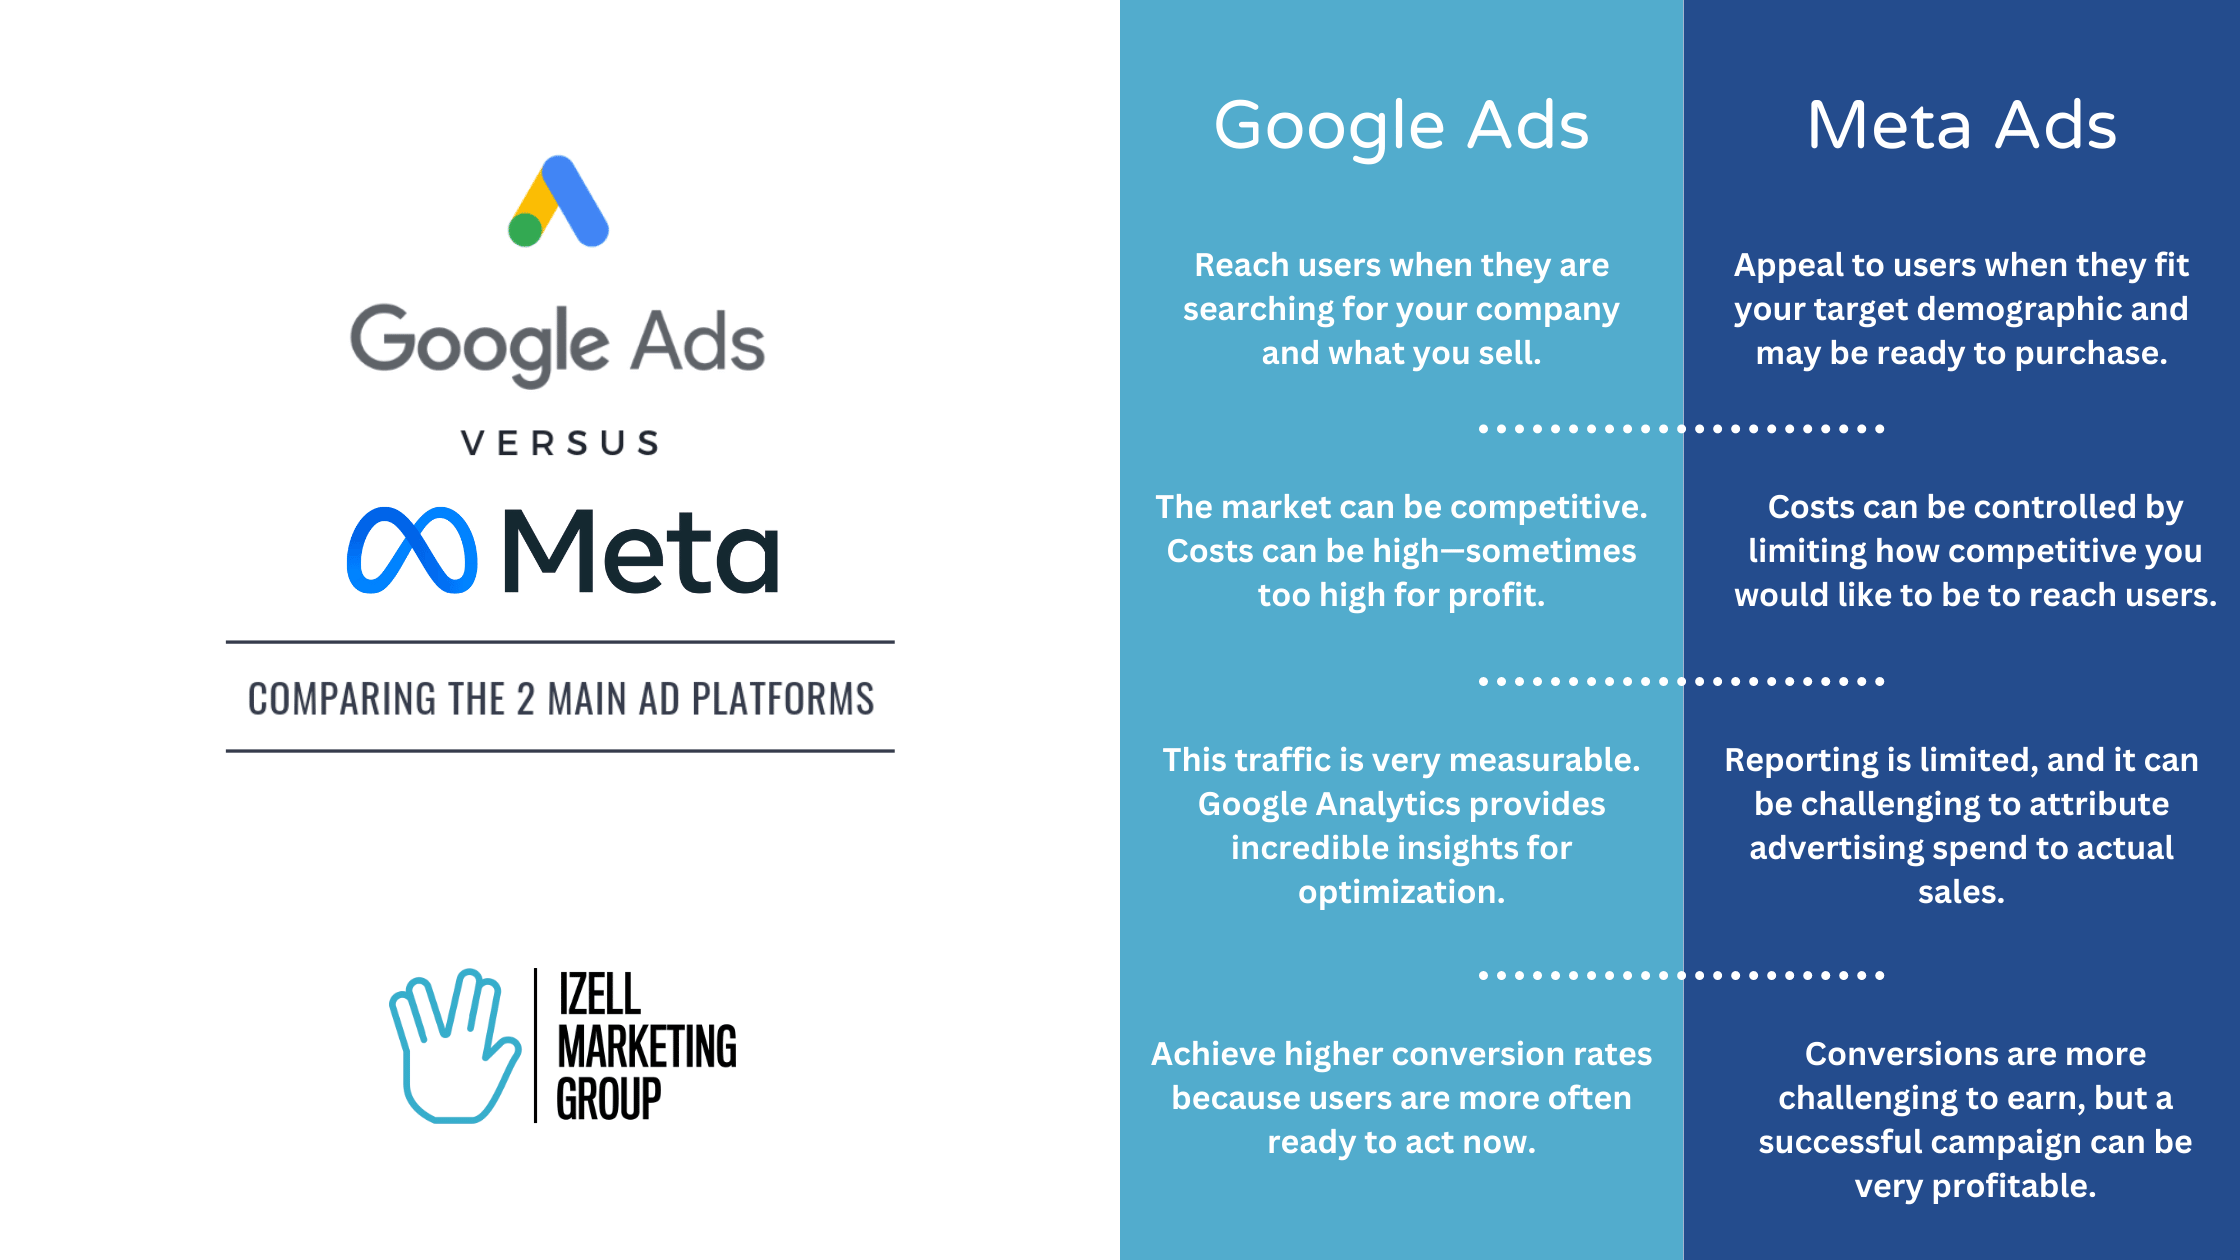 Google Ads vs. Meta Ads